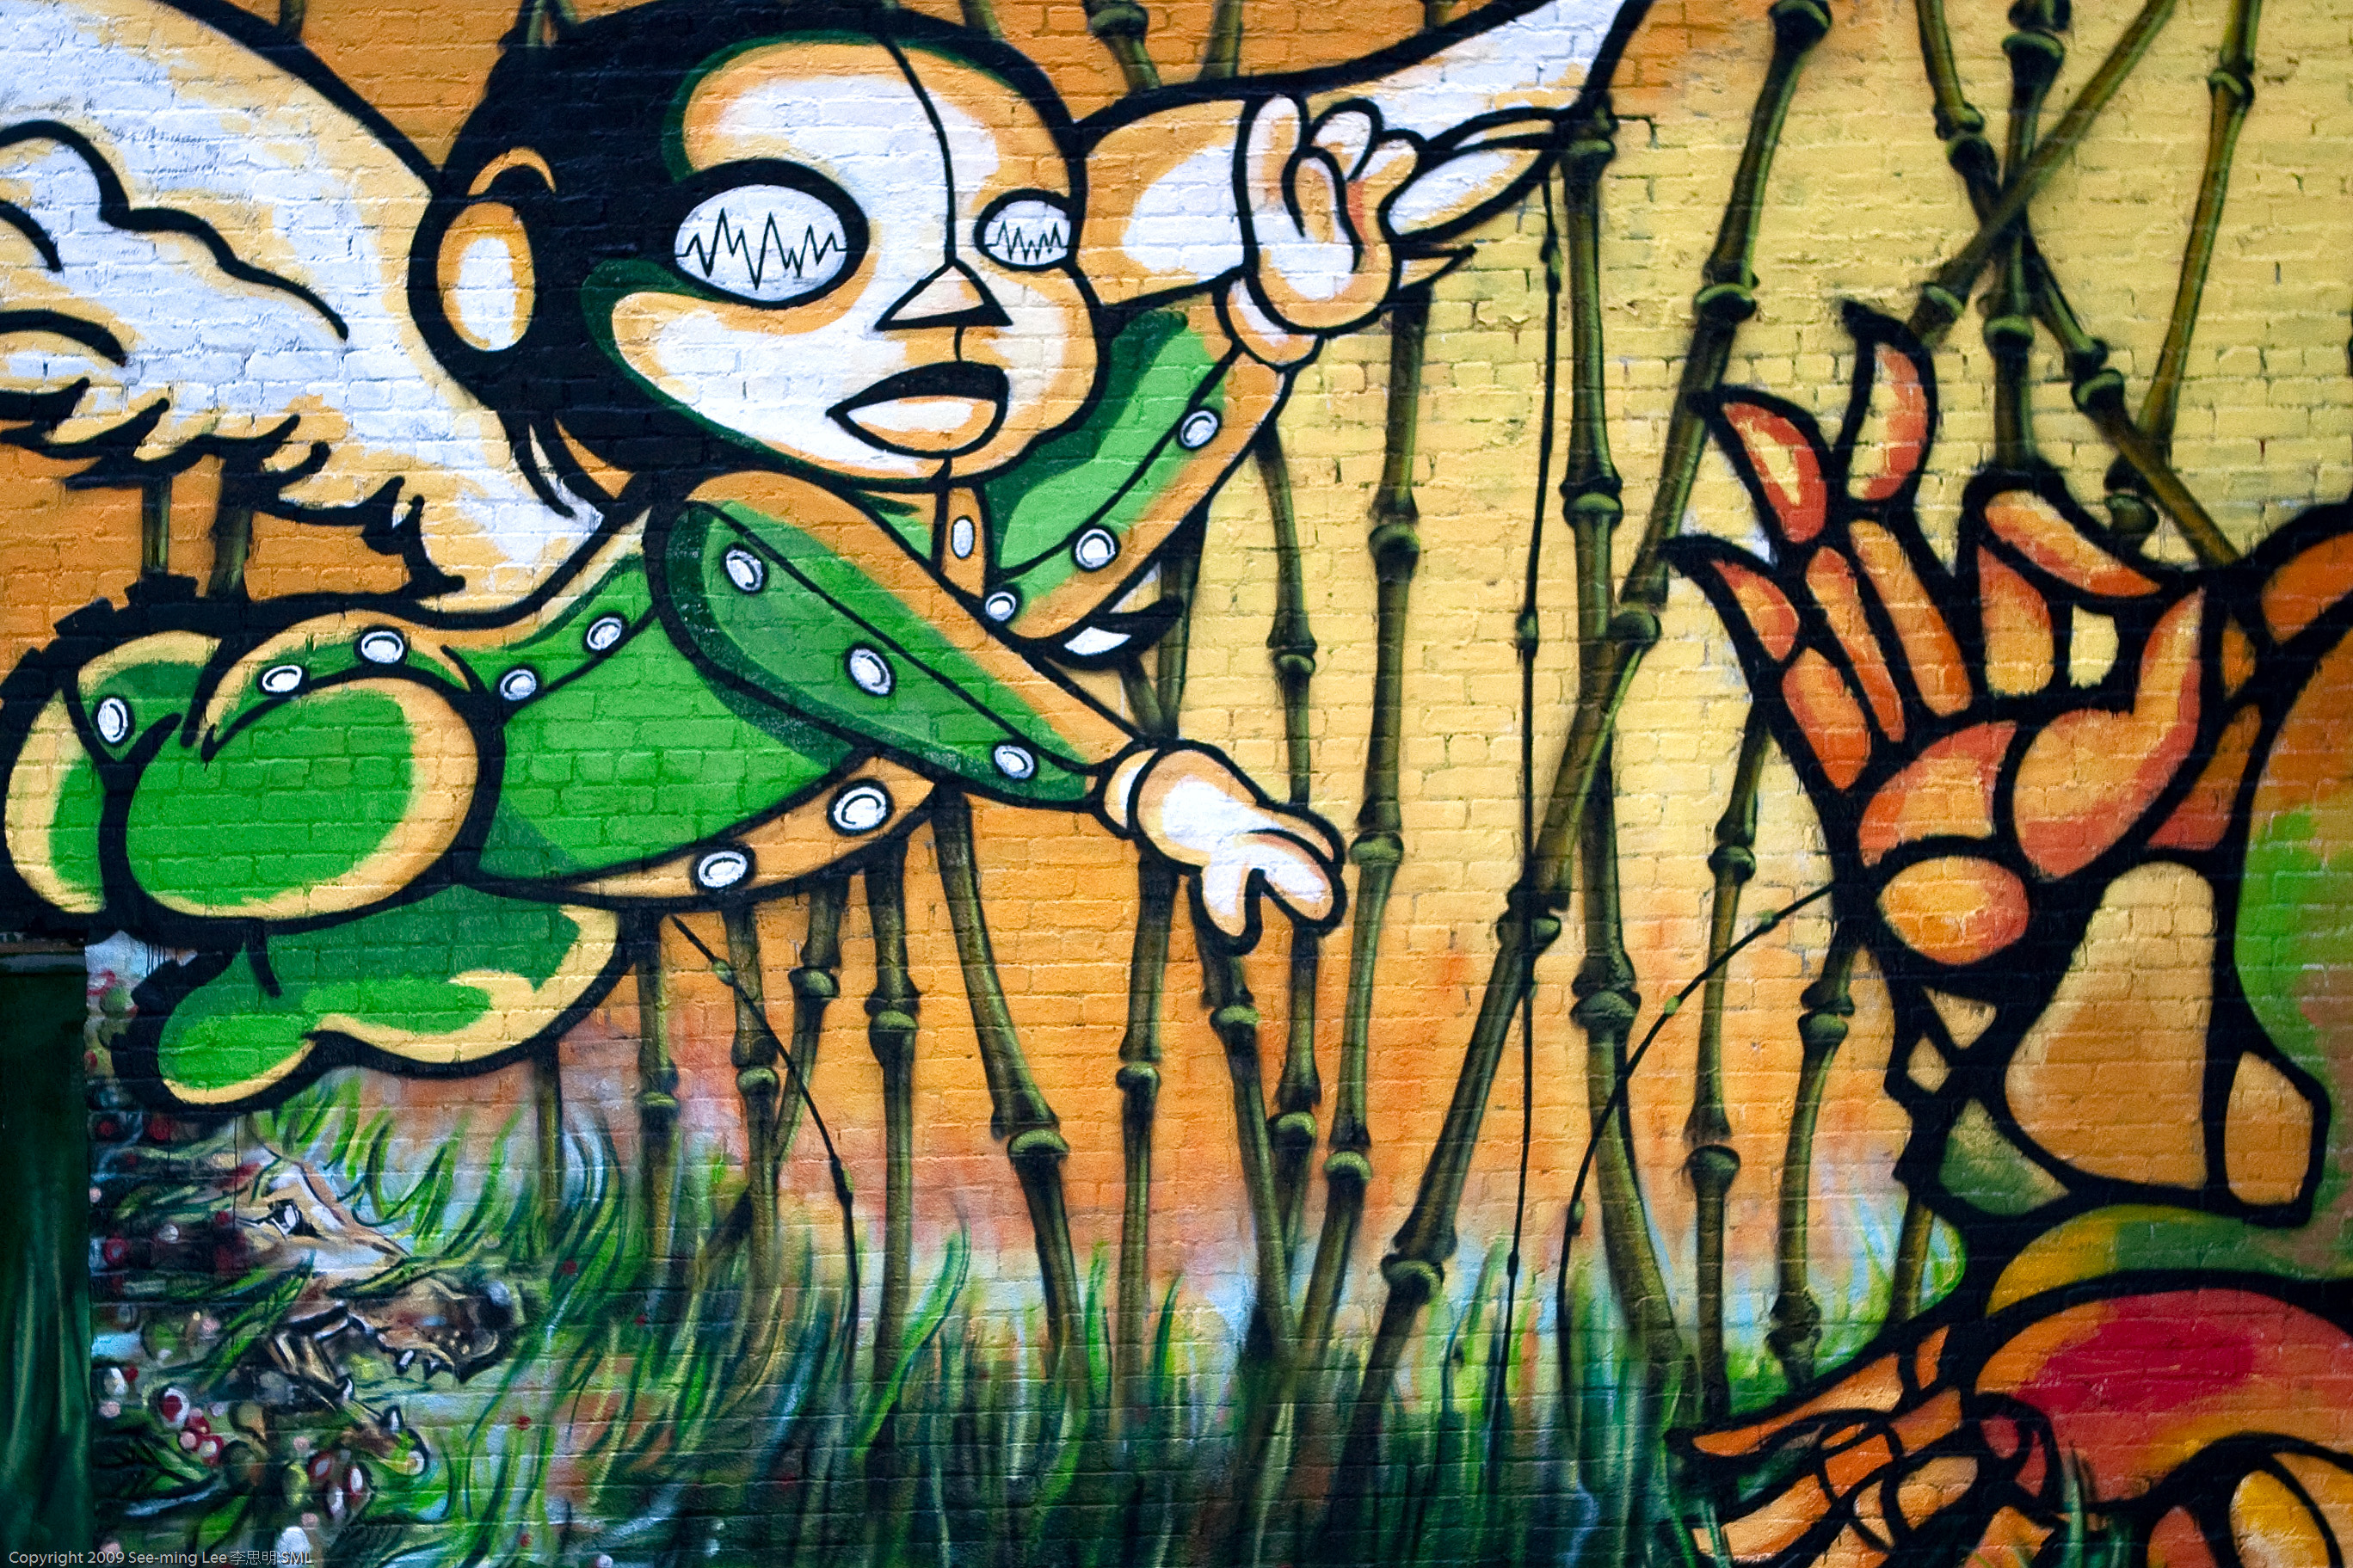 Dumbo Graffiti / Dumbo Arts Center: Art Under the Bridge Festiva